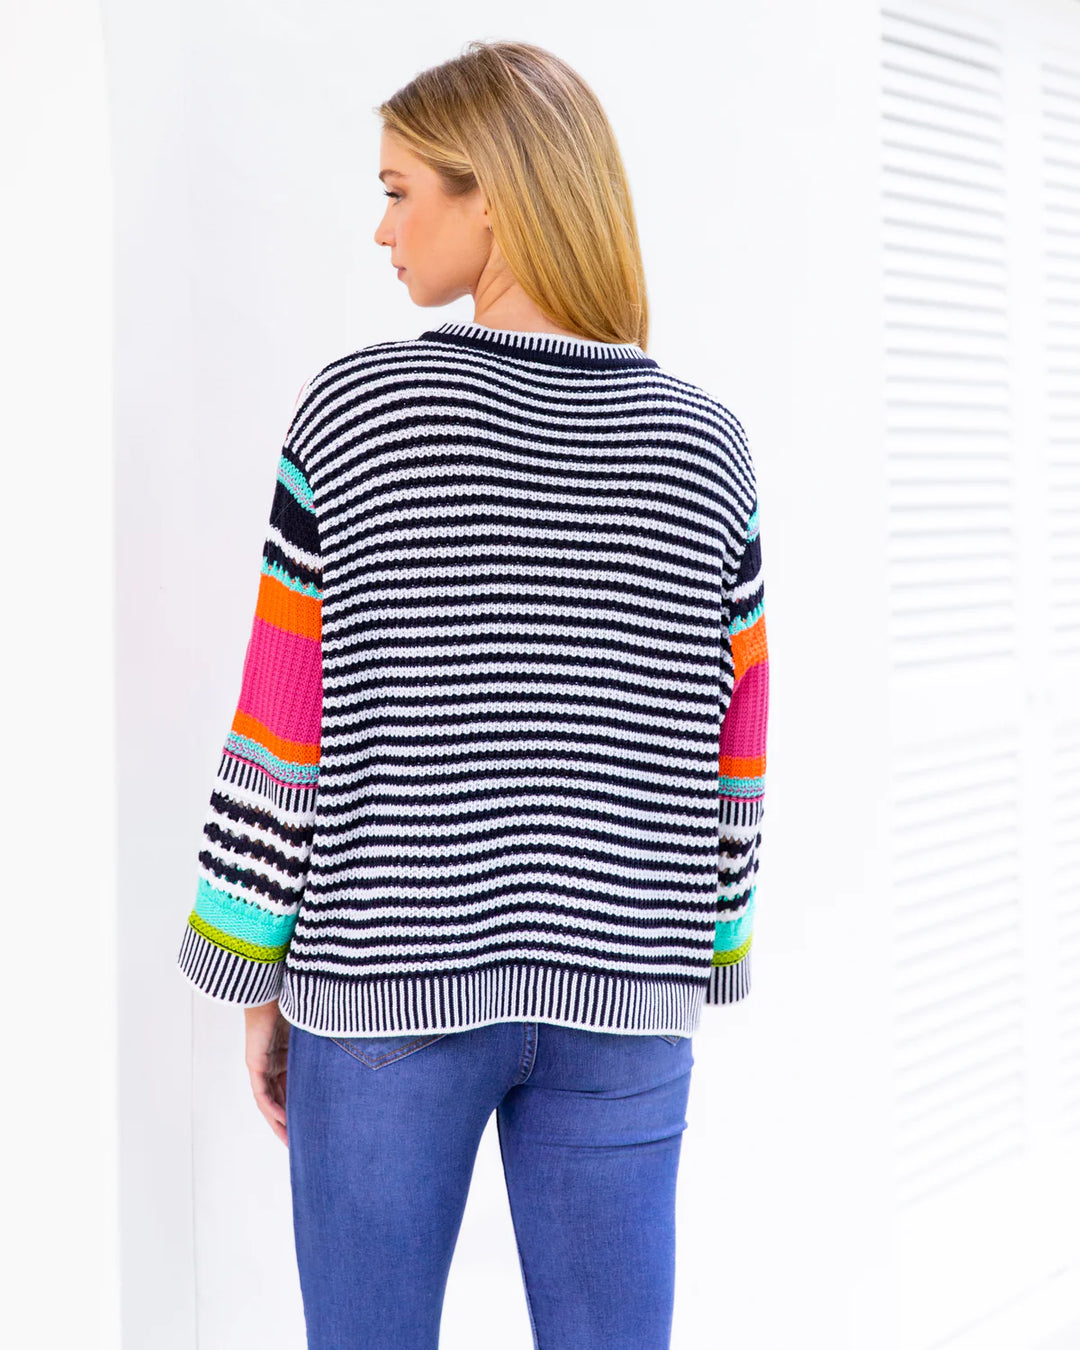 Primary Brights Stripe Knit Jumper - @Saucy Ladies